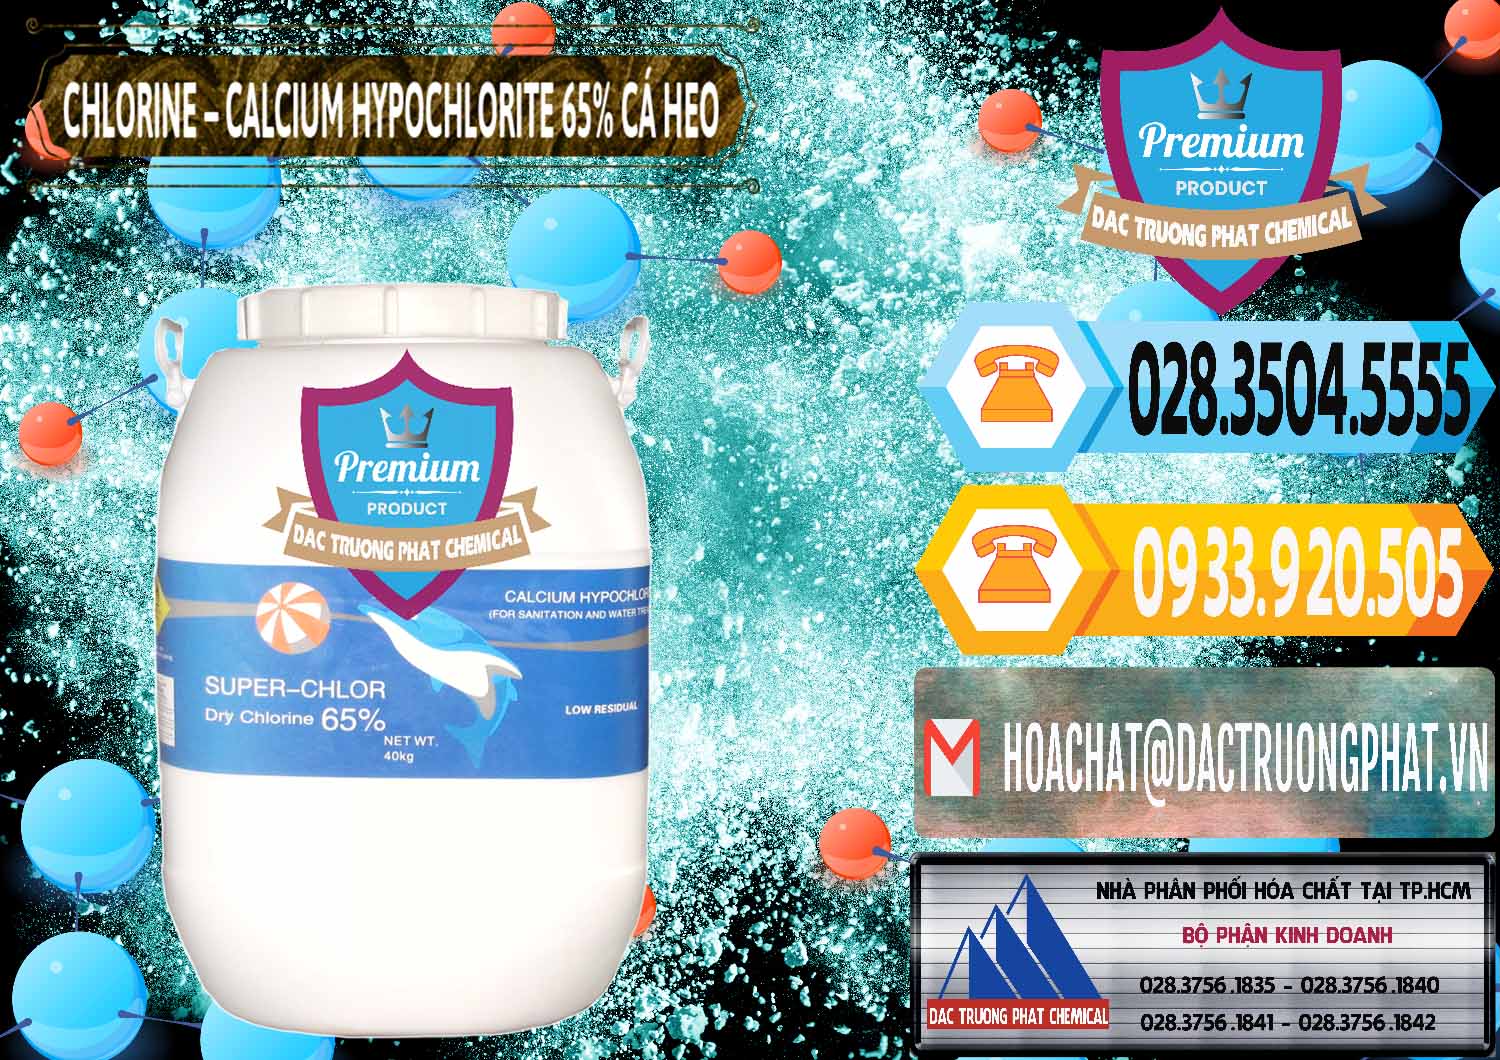 Cung ứng ( bán ) Clorin - Chlorine Cá Heo 65% Trung Quốc China - 0053 - Nơi chuyên kinh doanh - phân phối hóa chất tại TP.HCM - hoachattayrua.net